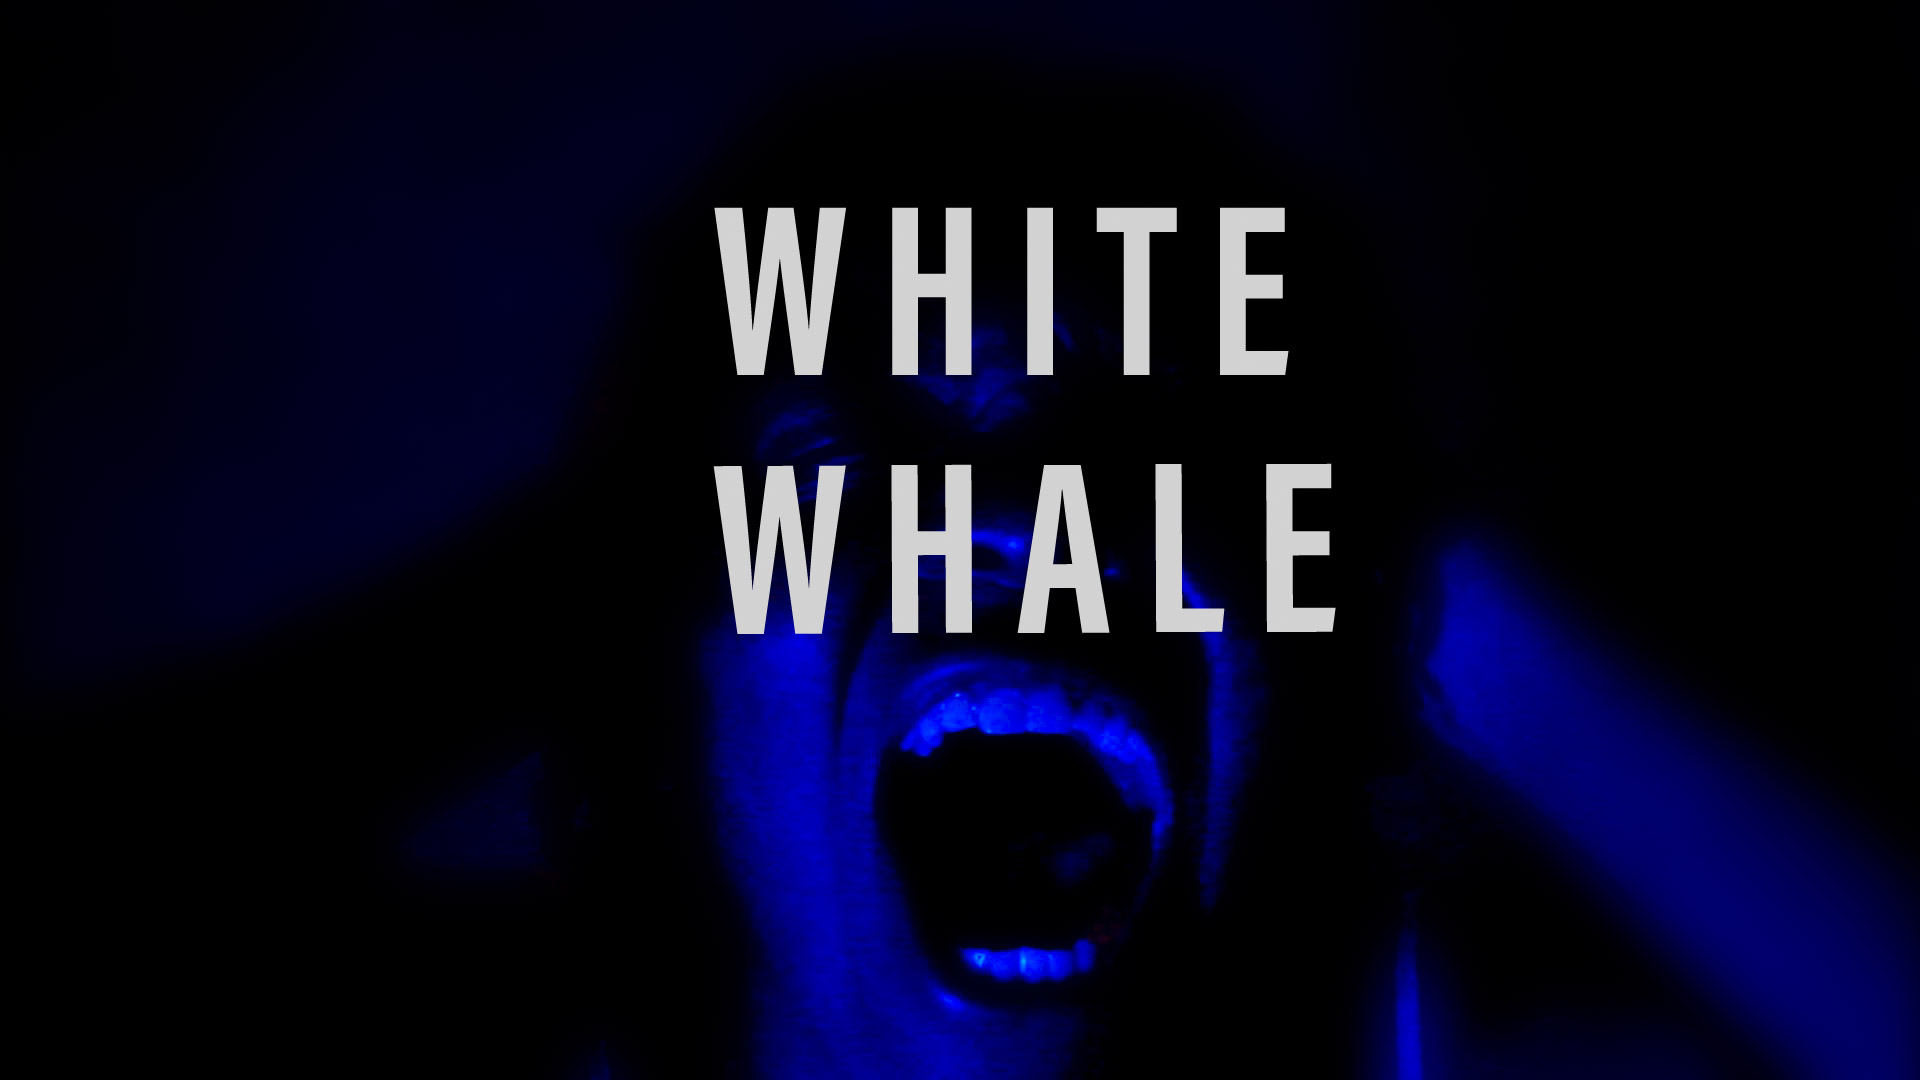 White Whale (2020)